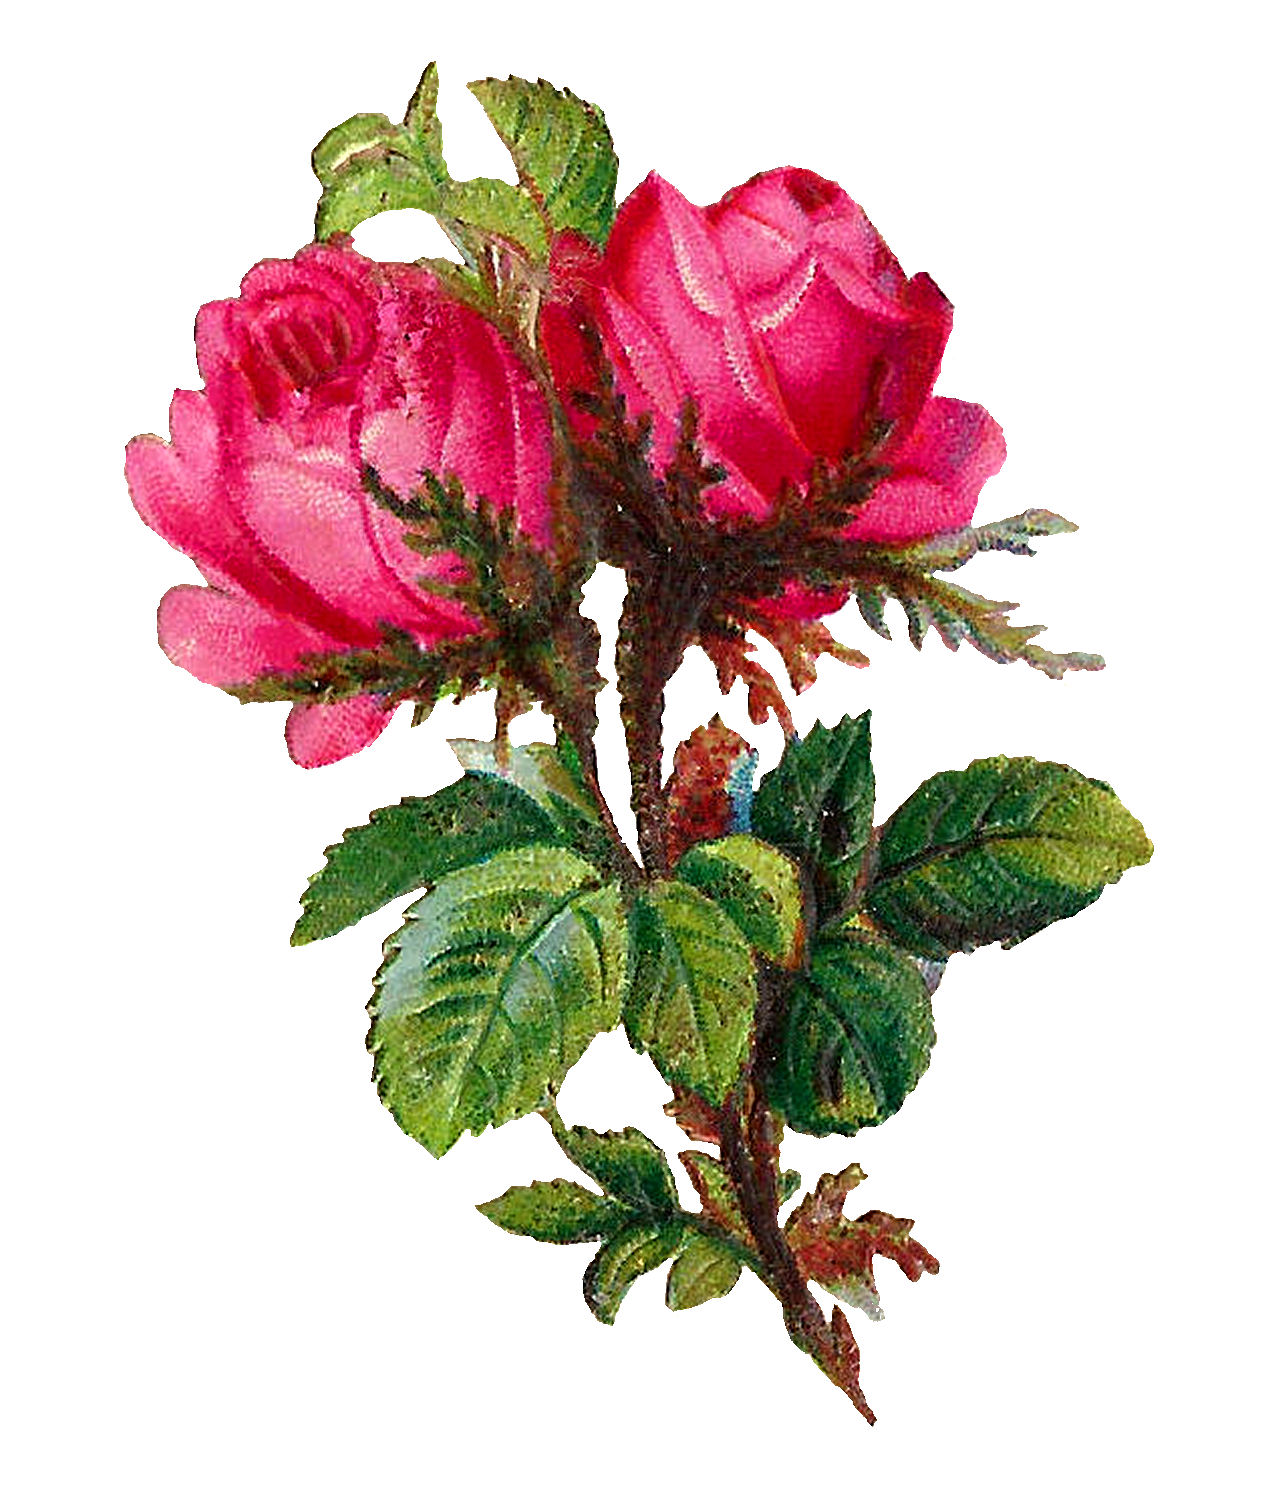 Antique Images: Printable Botanical Art Digital Pink Rose Flower Clip ...